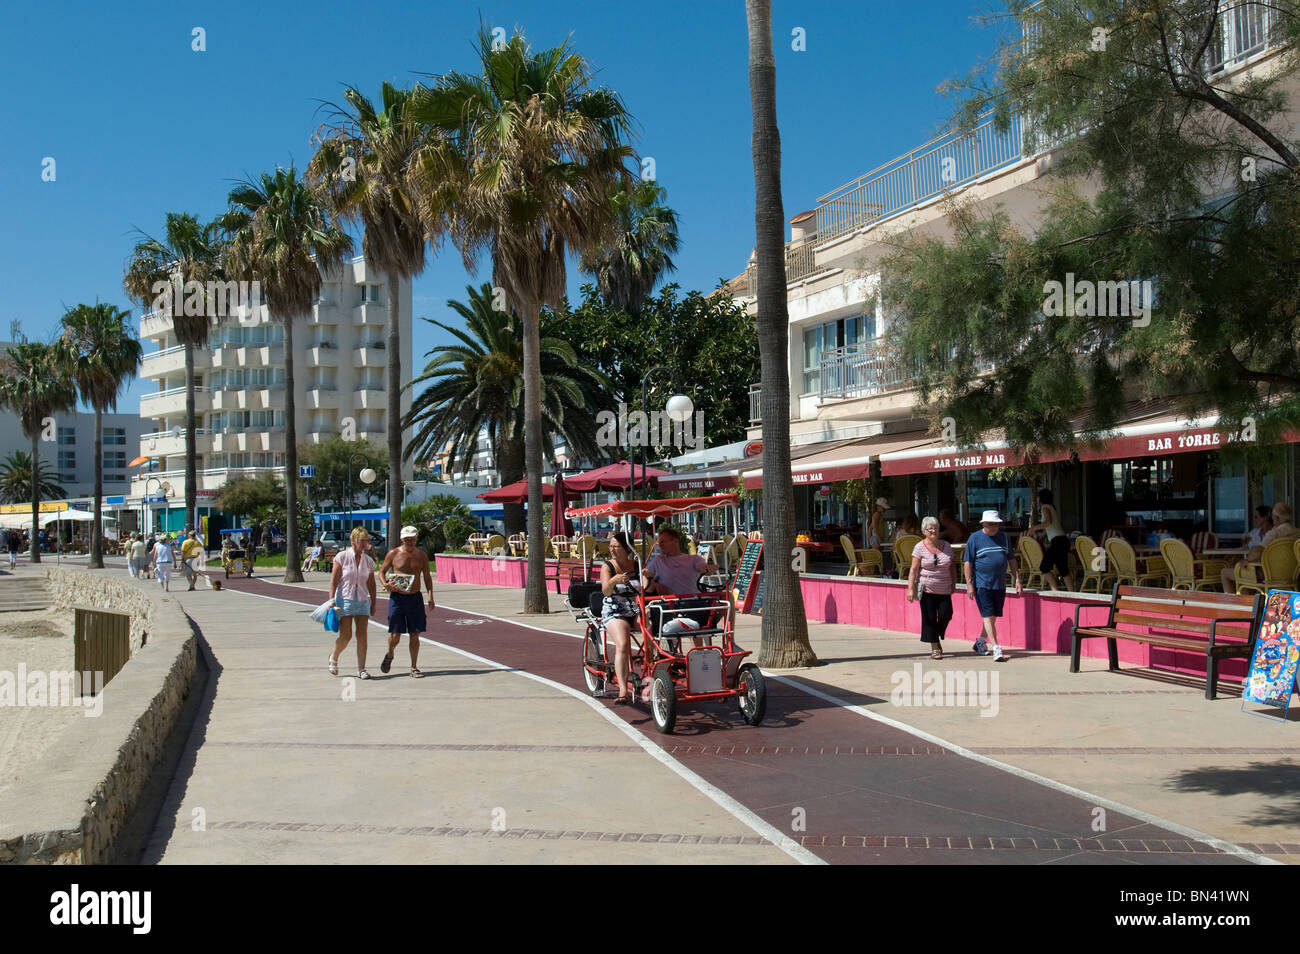 Promenade with cycle path, Cala Bona, Majorca, Balearics, Spain Stock Photo